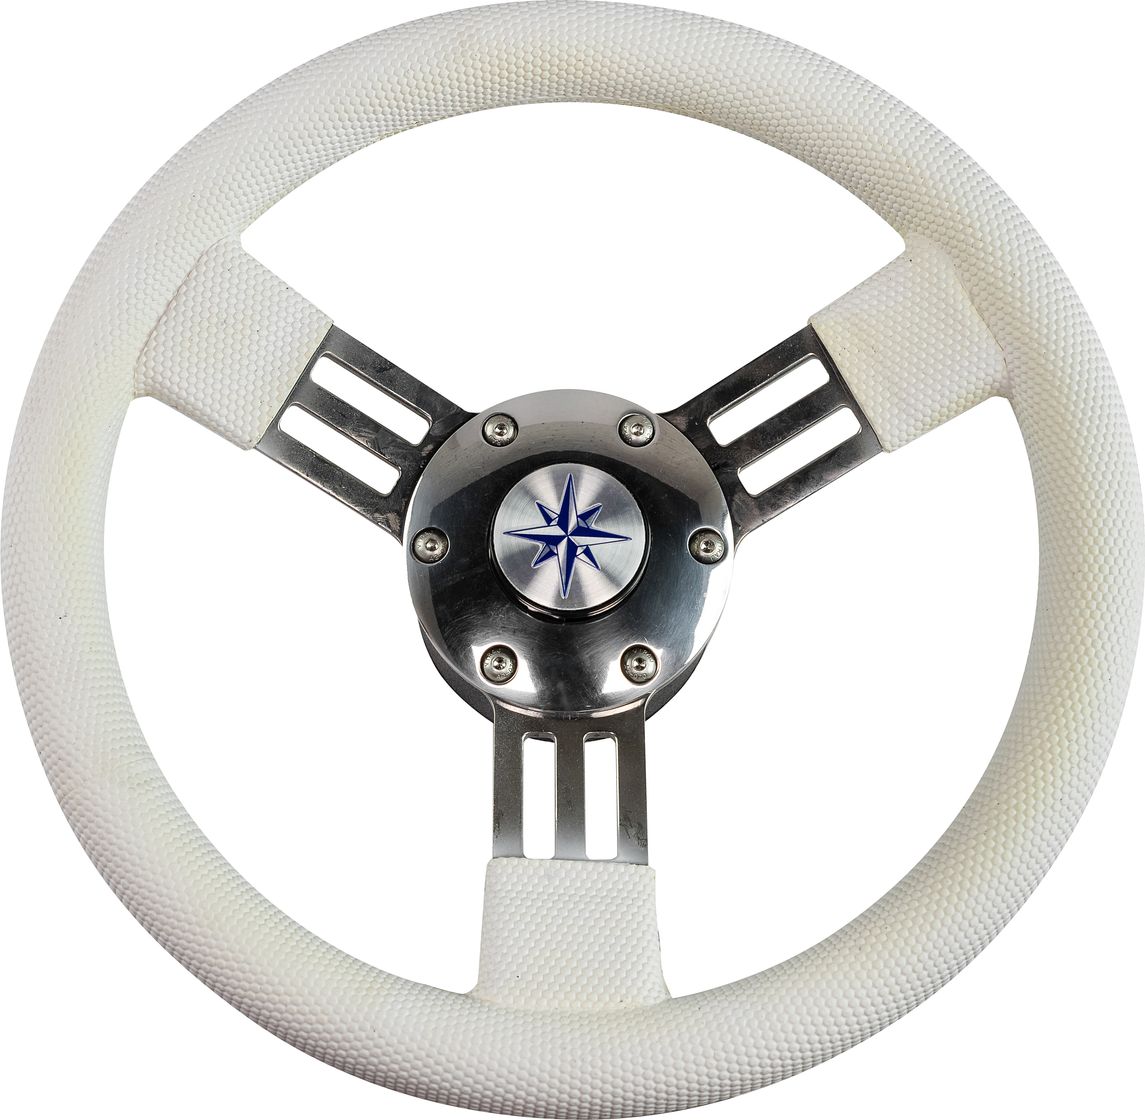 Рулевое колесо PEGASO обод белый, спицы серебряные д. 300 мм VN13327-08